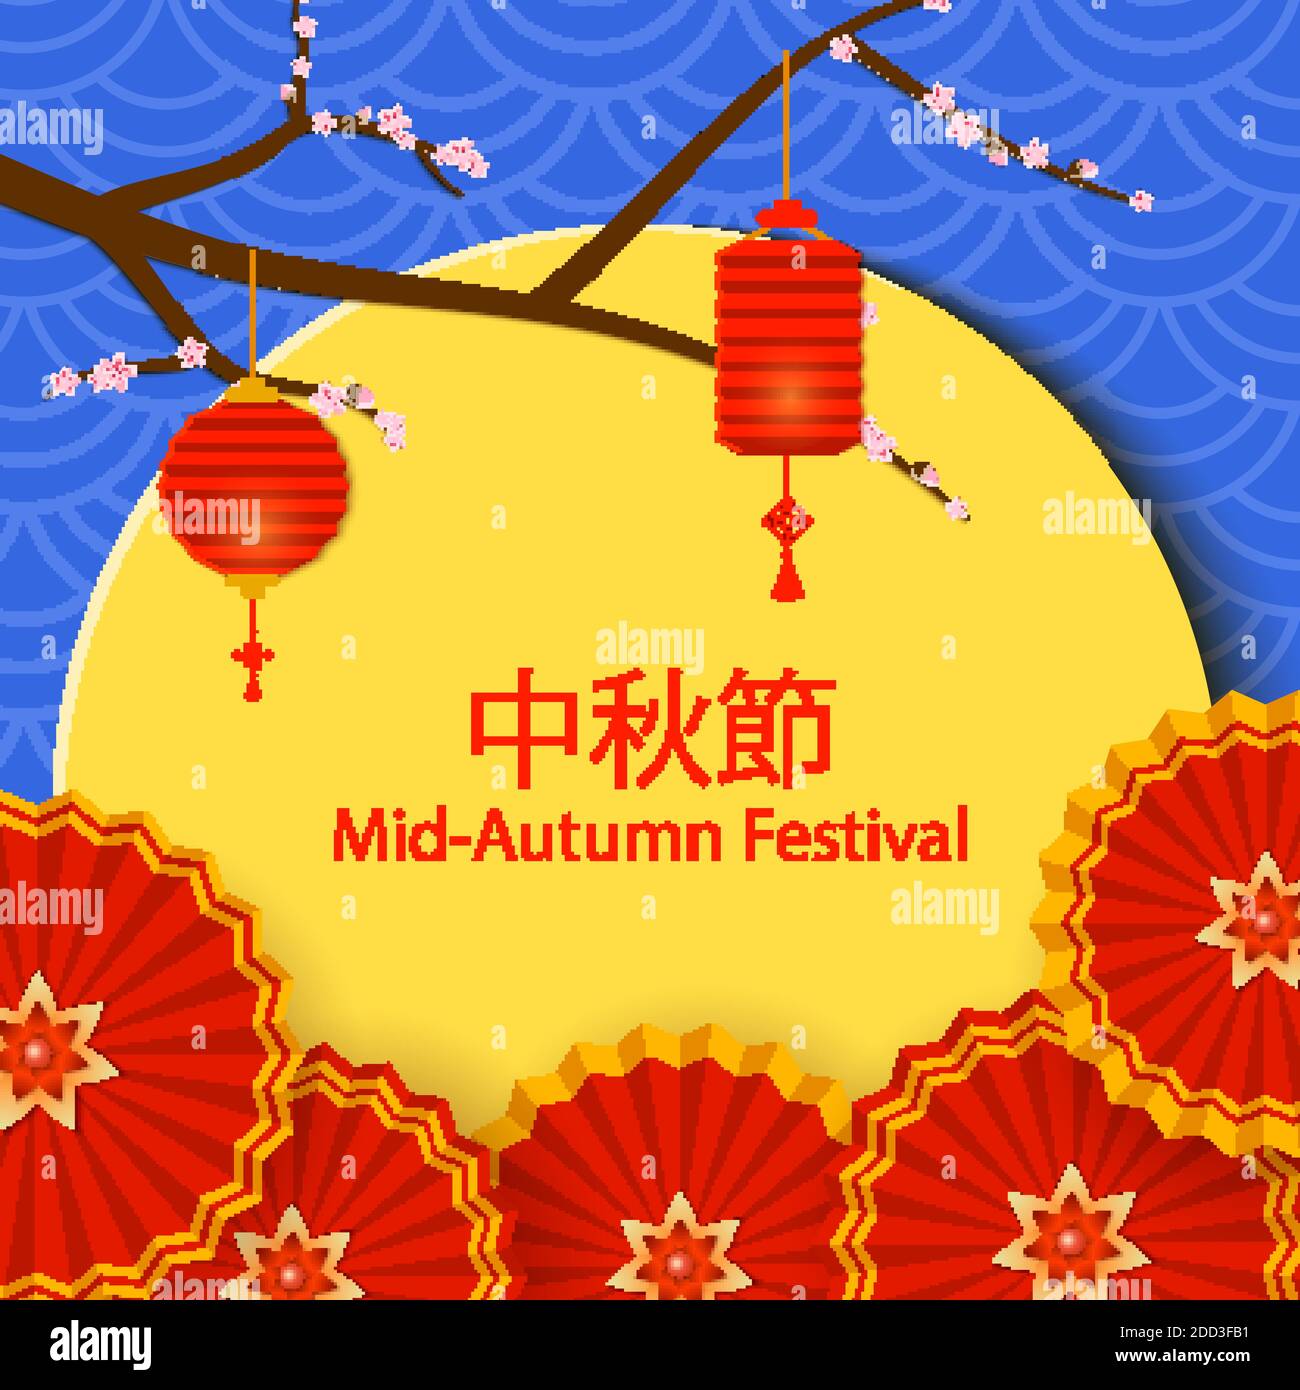 Chinesische Mitte Herbst Festival Design. Feiertagshintergrund mit Kirschblütenzweig, Vollmond, runden Ventilatoren und Papierlaternen auf blauem Hintergrund Stock Vektor